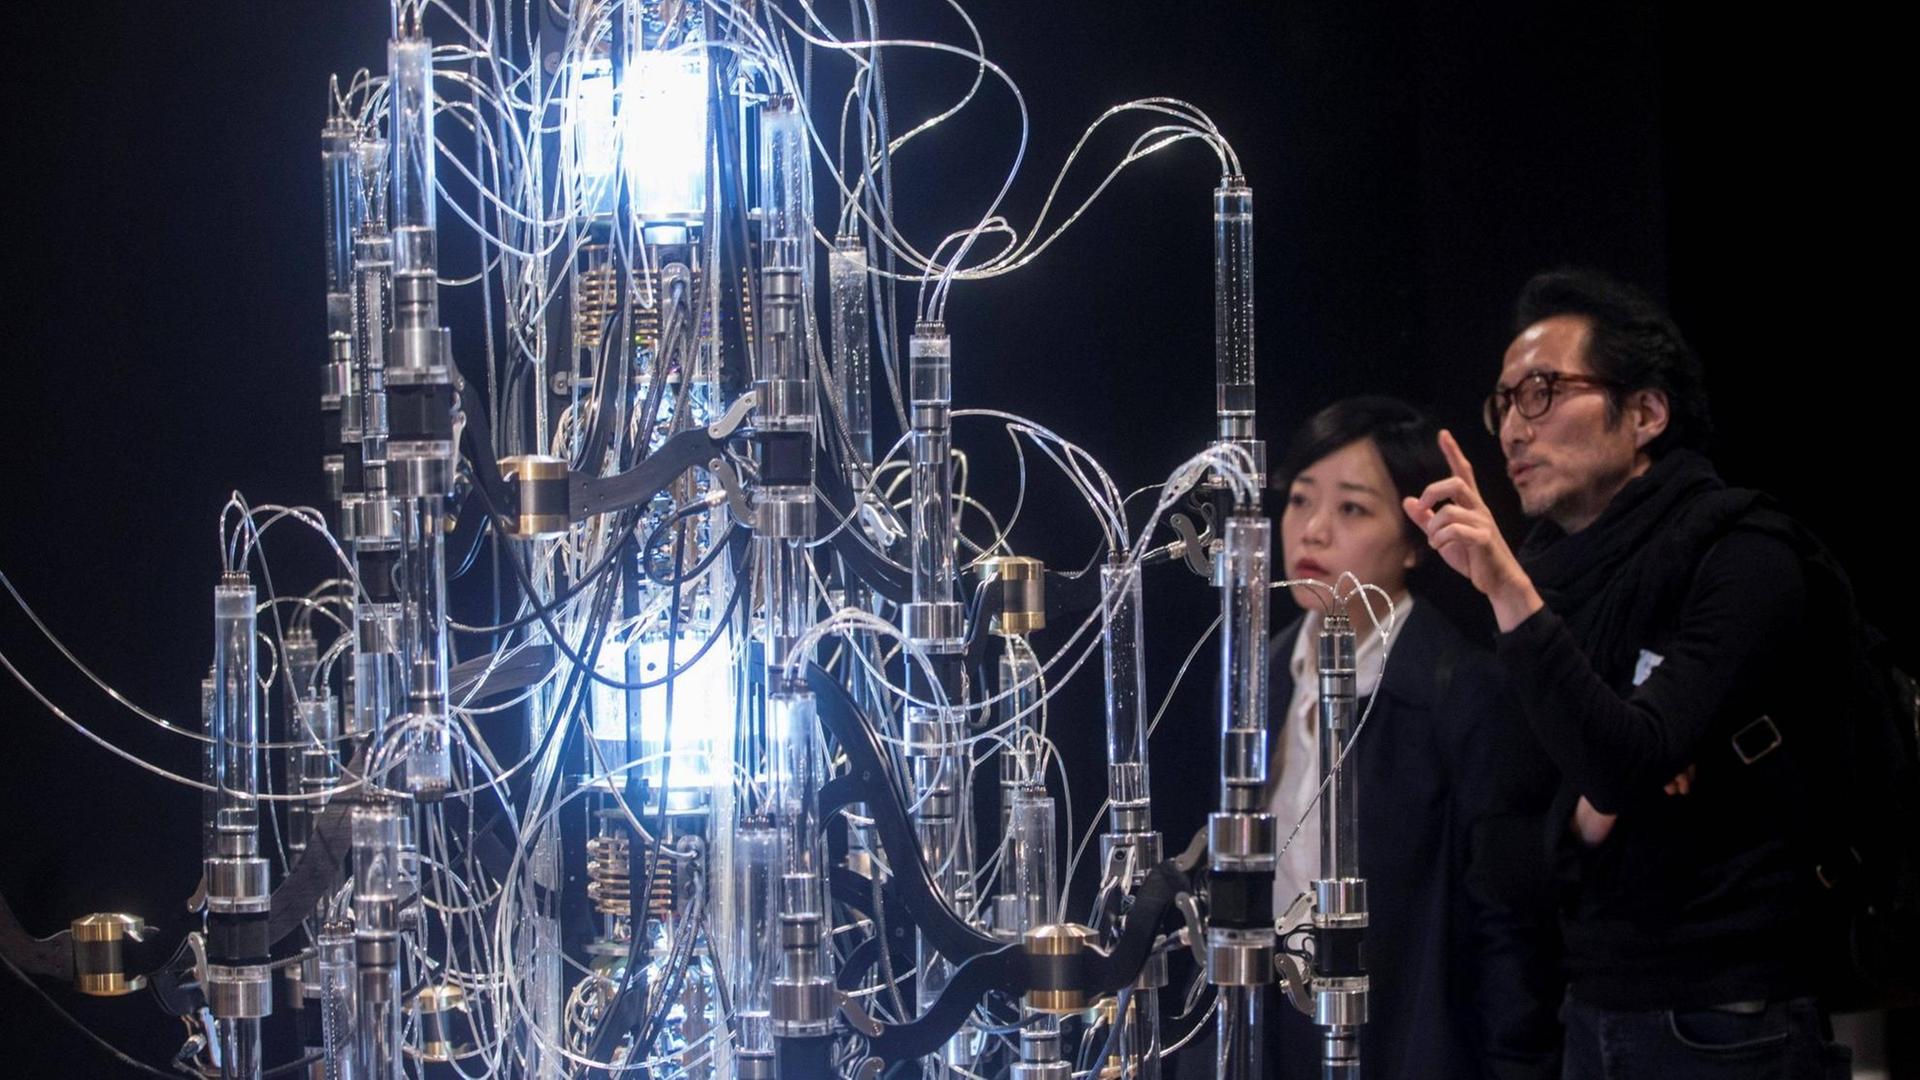 Der koreanische Künstler Yunchul Kim (rechts) und eine Frau schauen sich auf einer Ausstellung sein Werk "Cascada" an